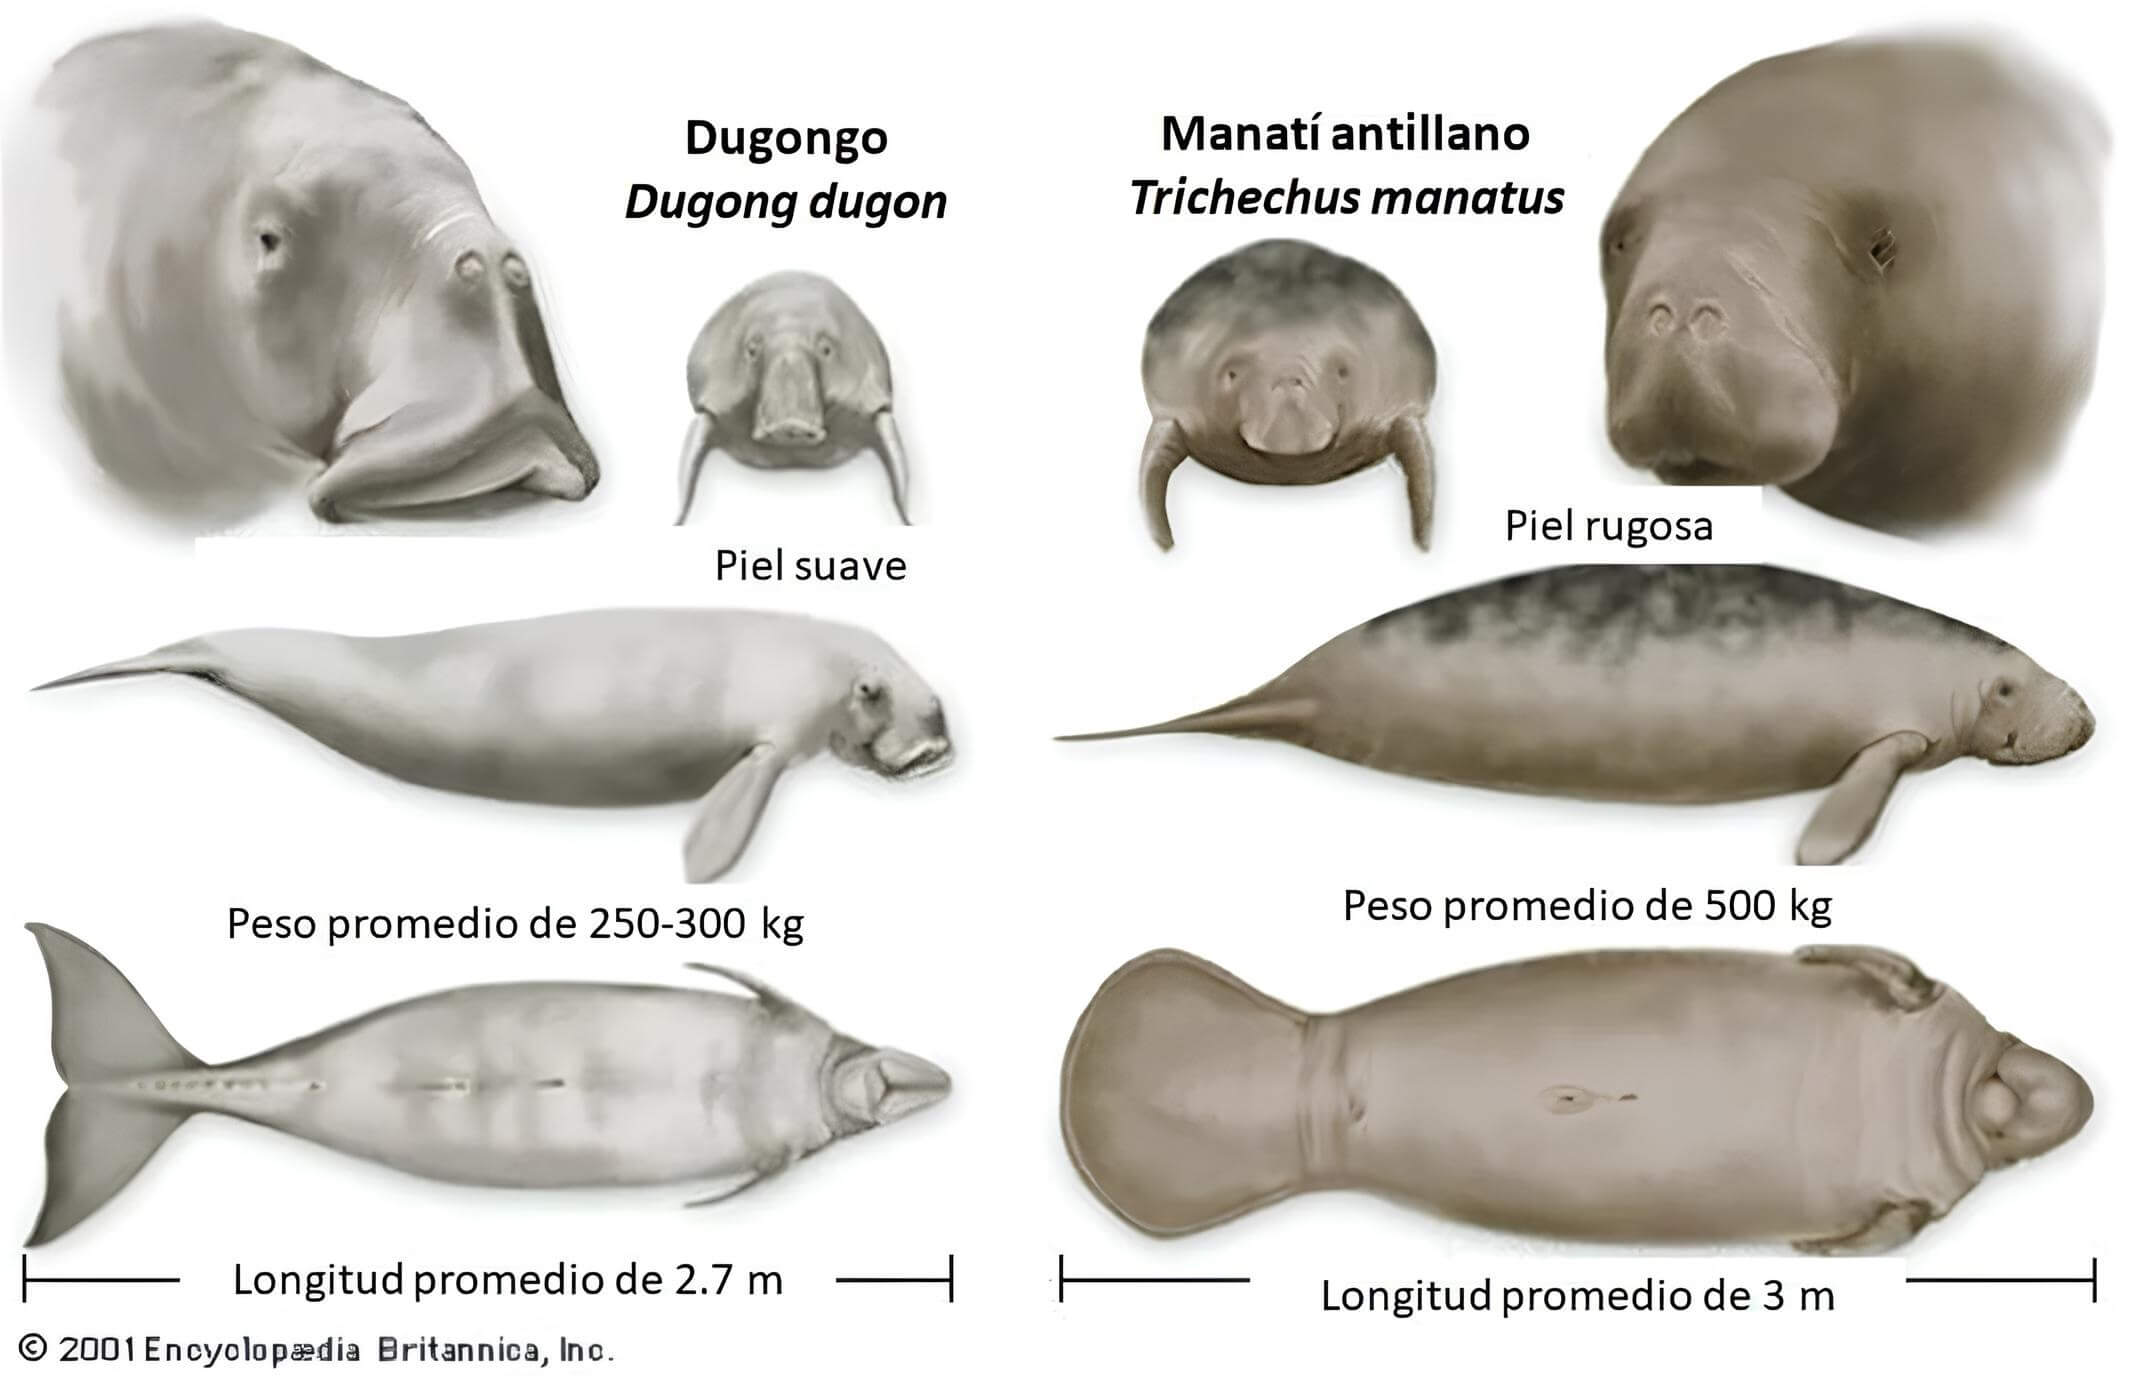 Diferencias de tamaño y peso entre el dugongo y el manatí. 